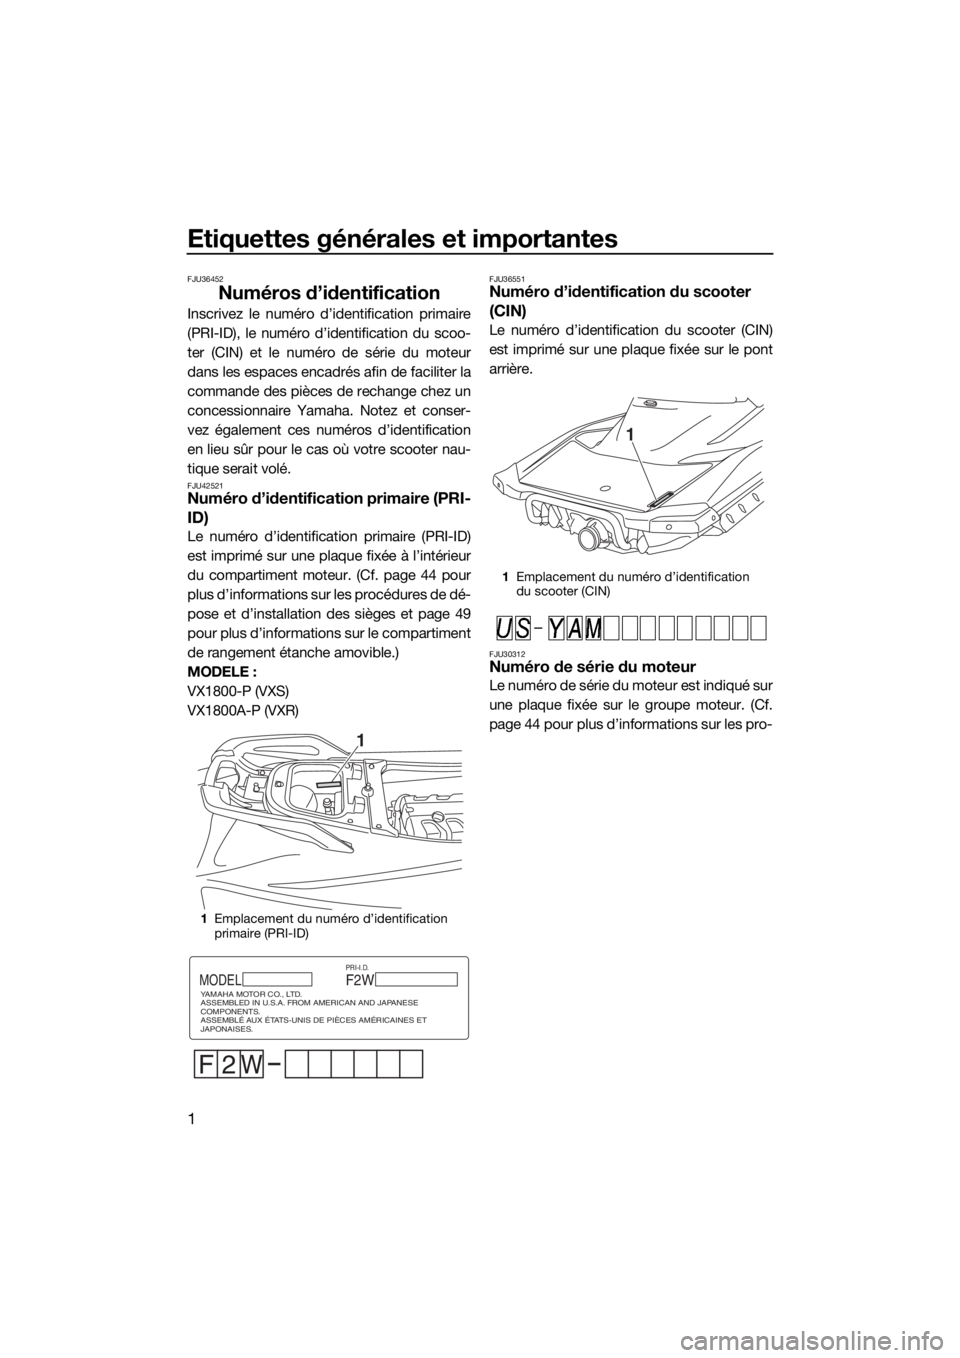 YAMAHA VXS 2015  Notices Demploi (in French) Etiquettes générales et importantes
1
FJU36452
Numéros d’identification
Inscrivez le numéro d’identification primaire
(PRI-ID), le numéro d’identification du scoo-
ter (CIN) et le numéro d